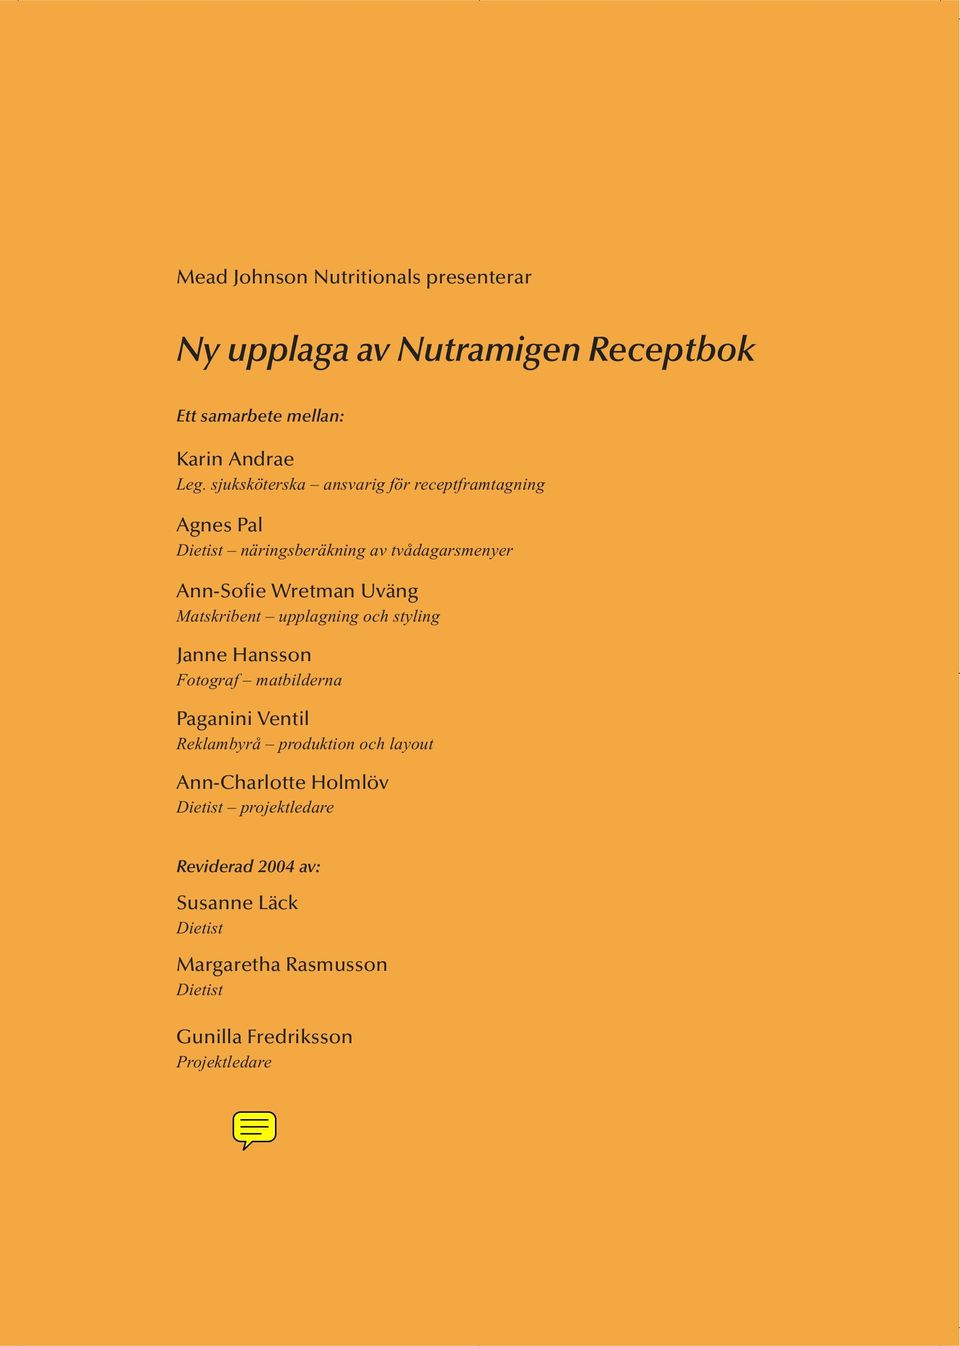 Matskribent upplagning och styling Janne Hansson Fotograf matbilderna Paganini Ventil Reklambyrå produktion och layout